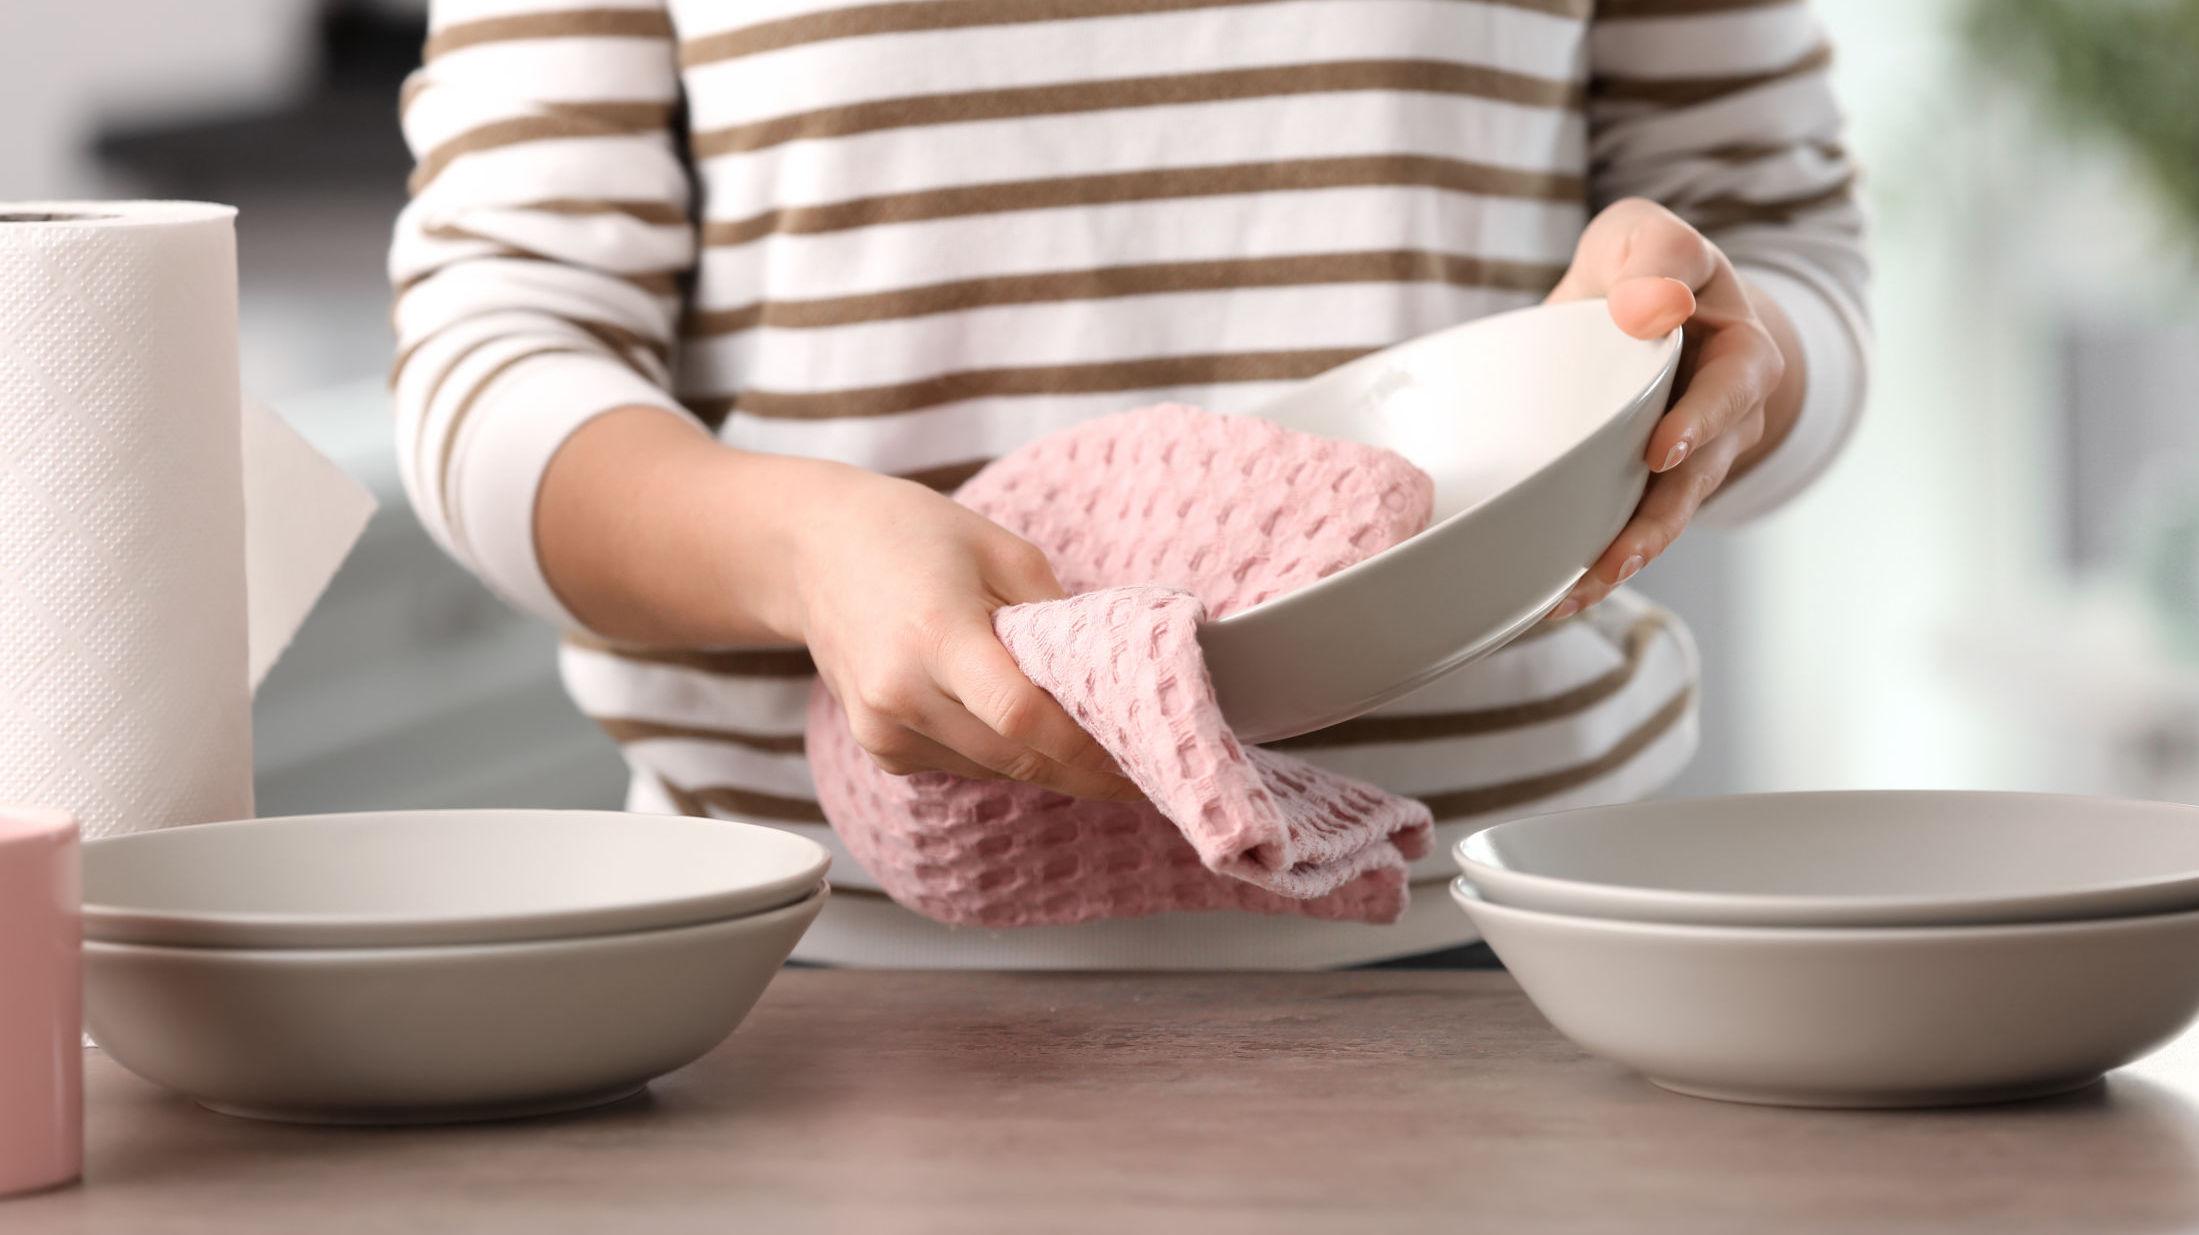 MÅ BRUKES RIKTIG: En undersøkelse fra juni viser at kjøkkenhåndklær kan bli en grobunn for bakterier hvis de ikke brukes korrekt. Foto: Shutterstock